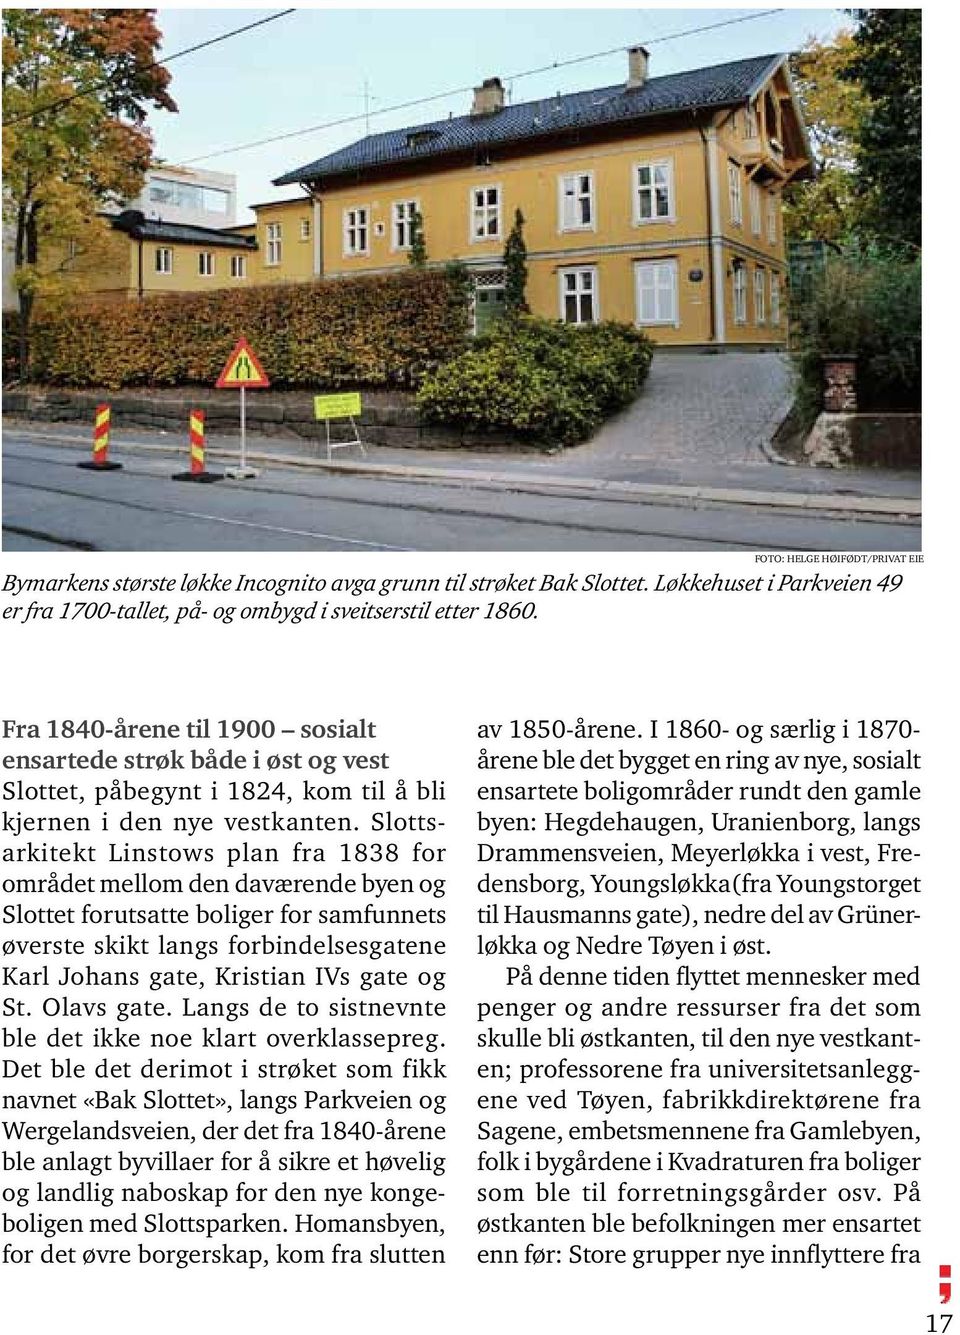 Slottsarkitekt Linstows plan fra 1838 for området mellom den daværende byen og Slottet forutsatte boliger for samfunnets øverste skikt langs forbindelsesgatene Karl Johans gate, Kristian IVs gate og